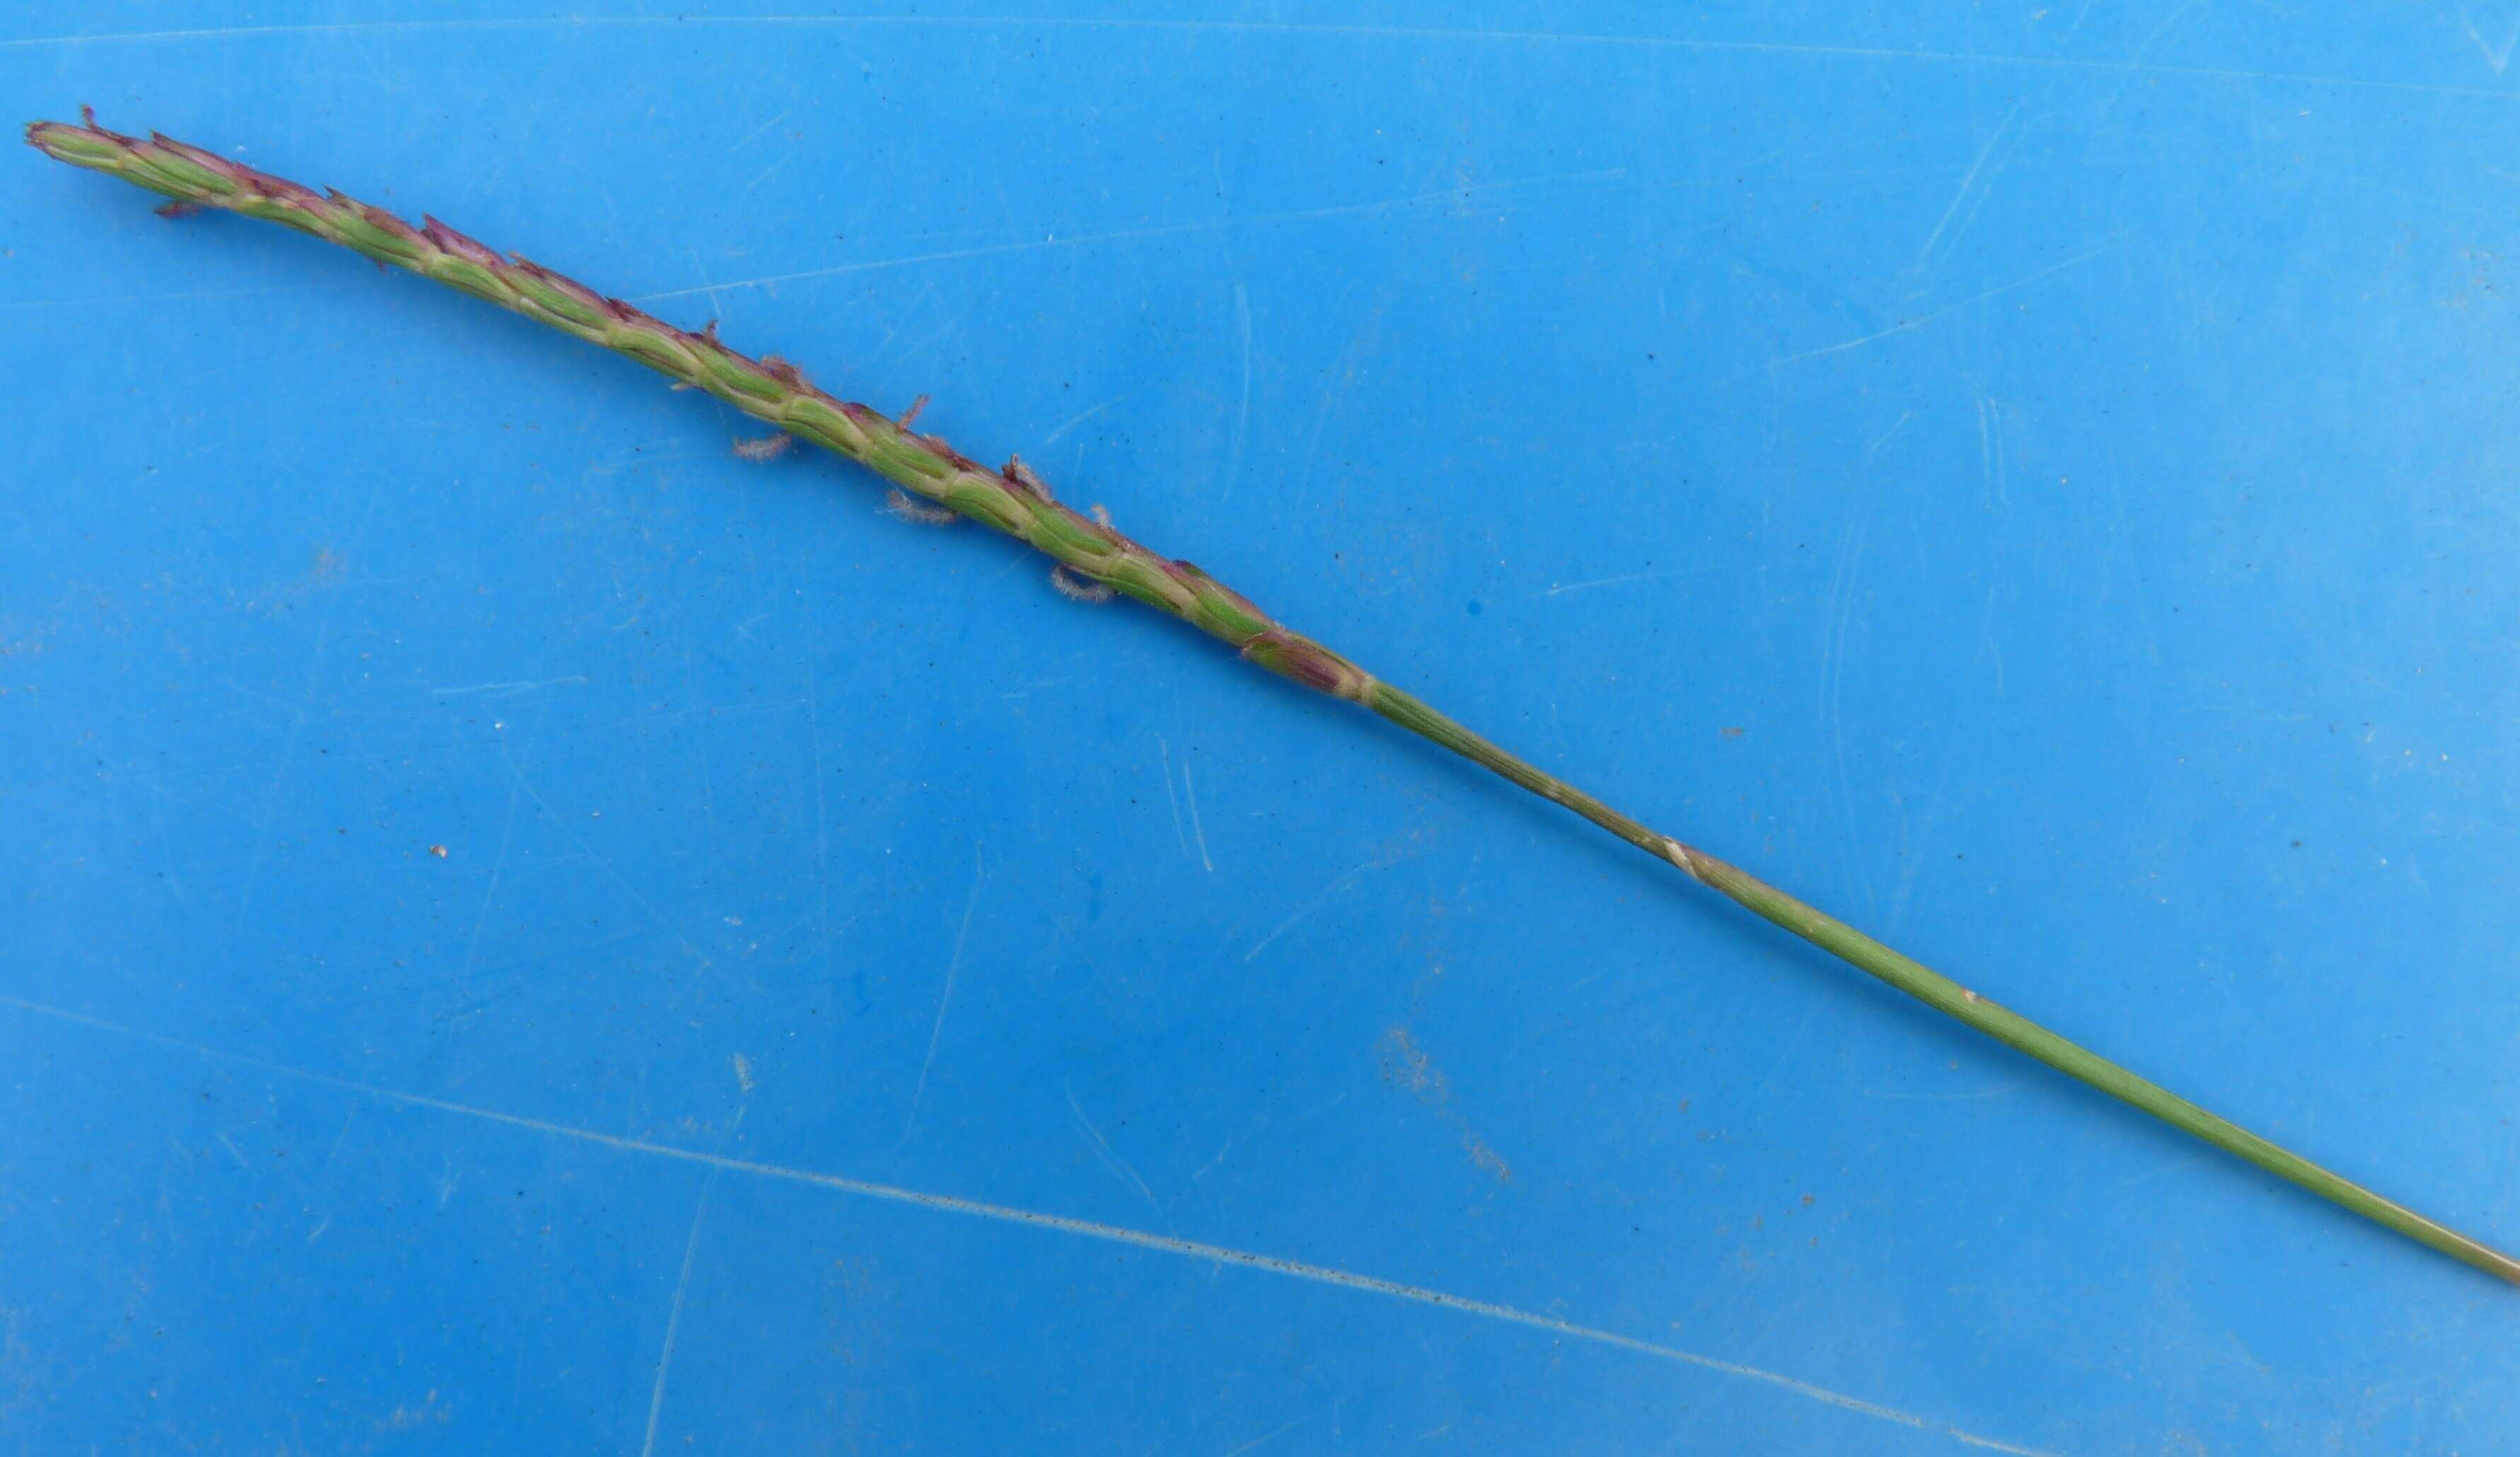 Image of Japanese Zoysiagrass